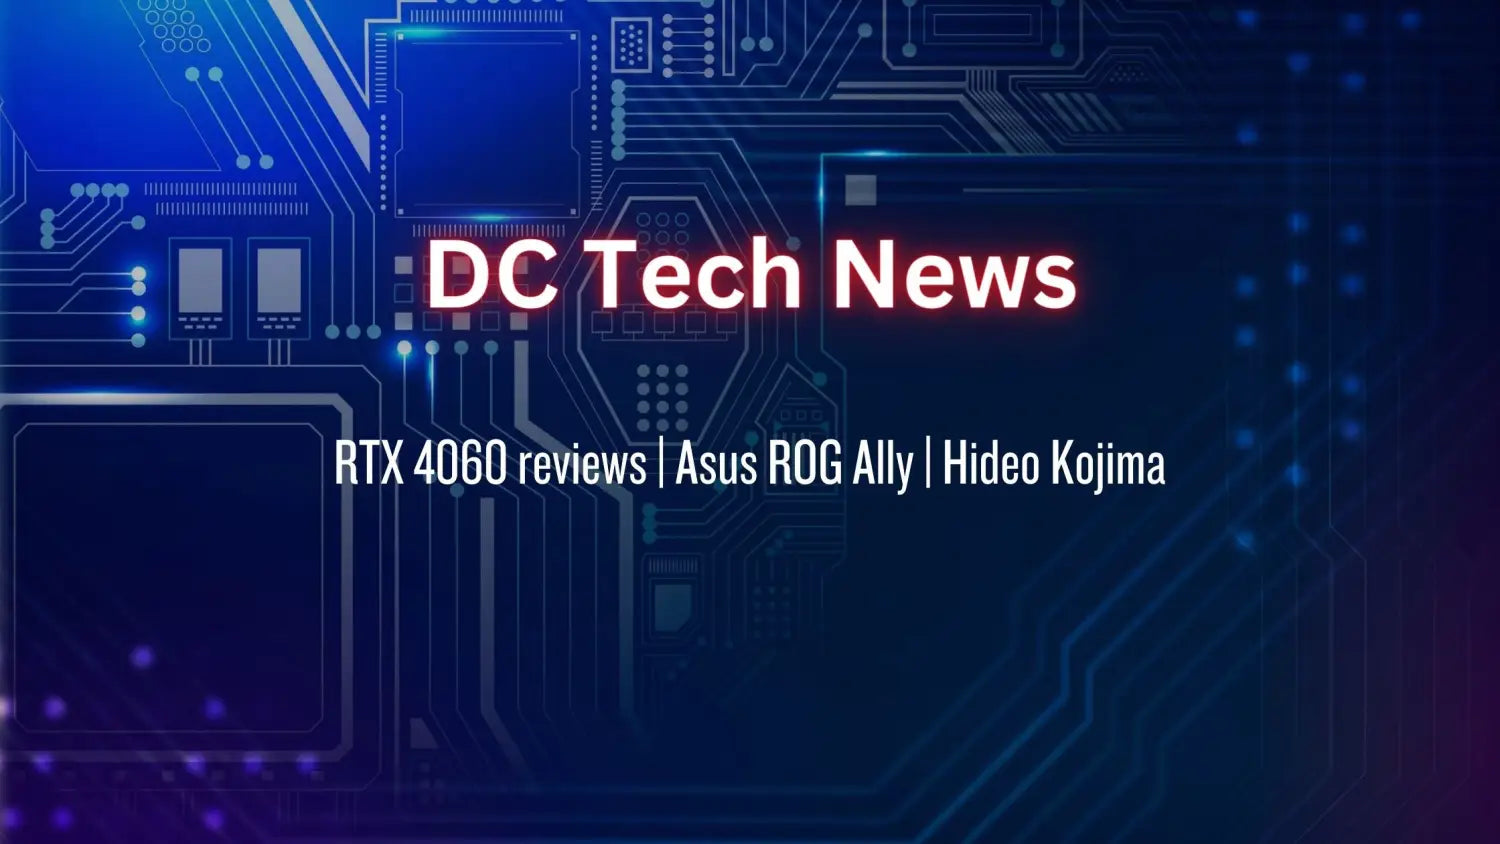 DC Tech News